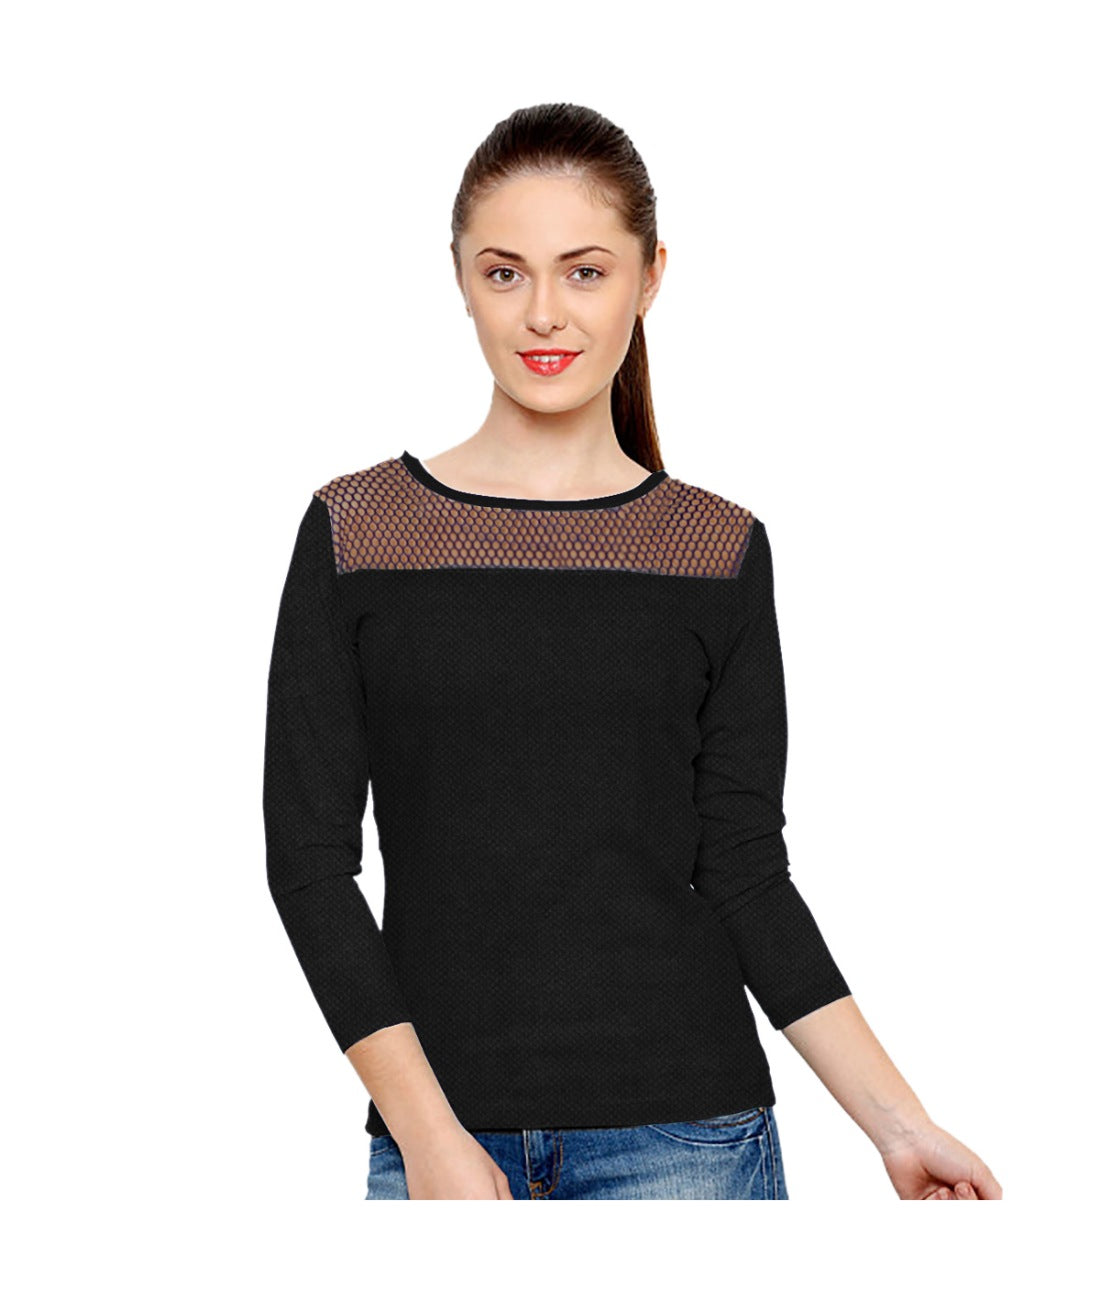 Women's Western Wear Hosiery T Shirts (Black) - GillKart